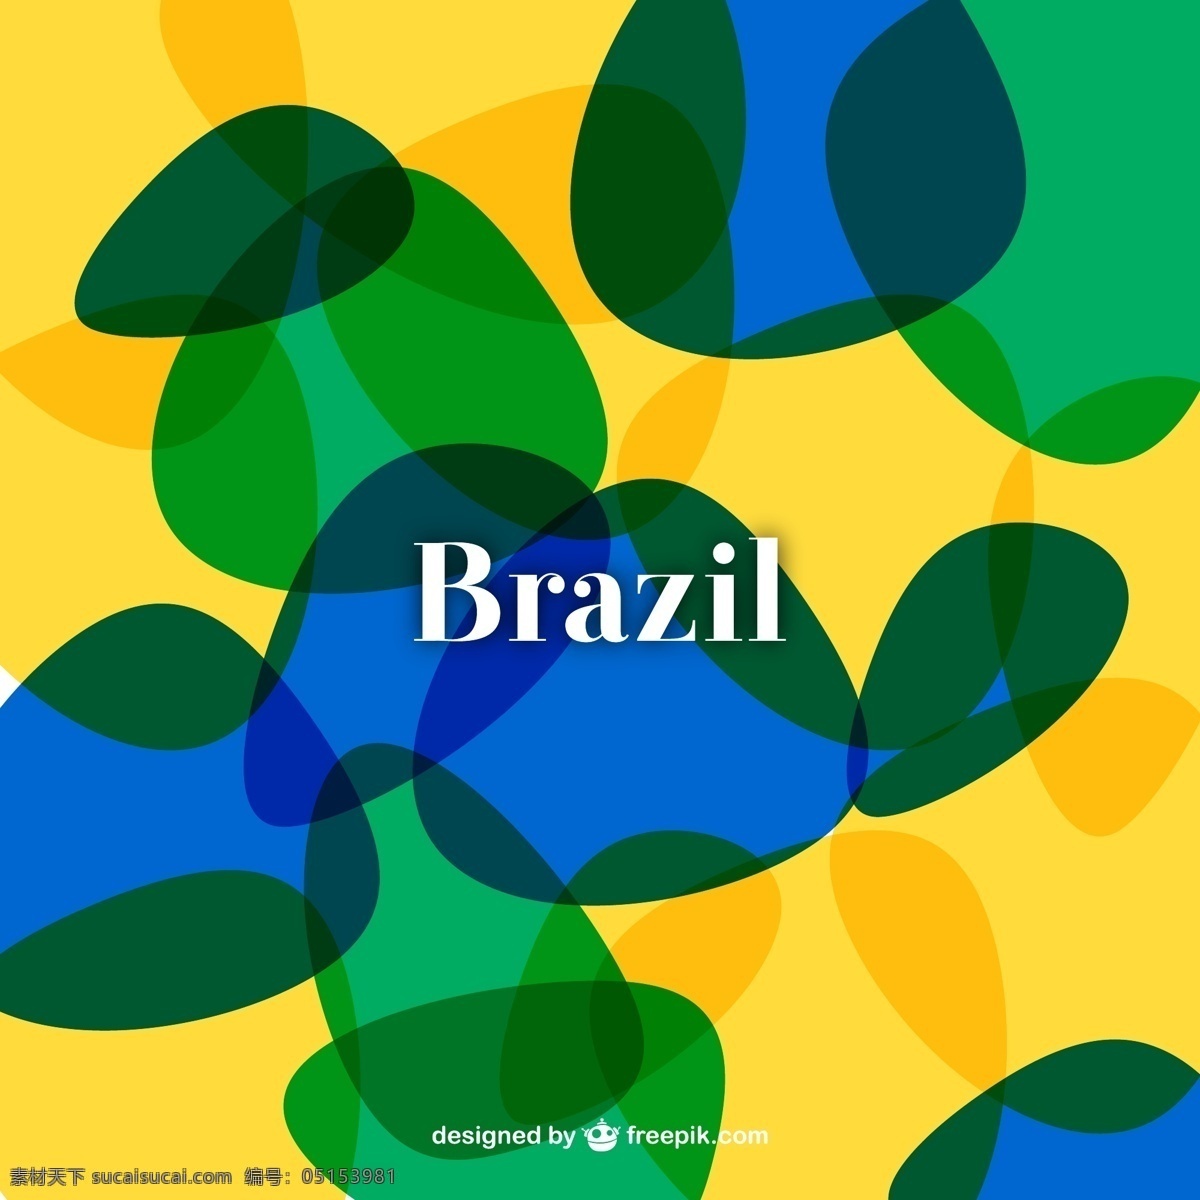 巴西 世界杯 背景 矢量 2014 巴西世界杯 背景图片 模板 设计稿 素材元素 炫彩背景 炫丽纹样 源文件 矢量图